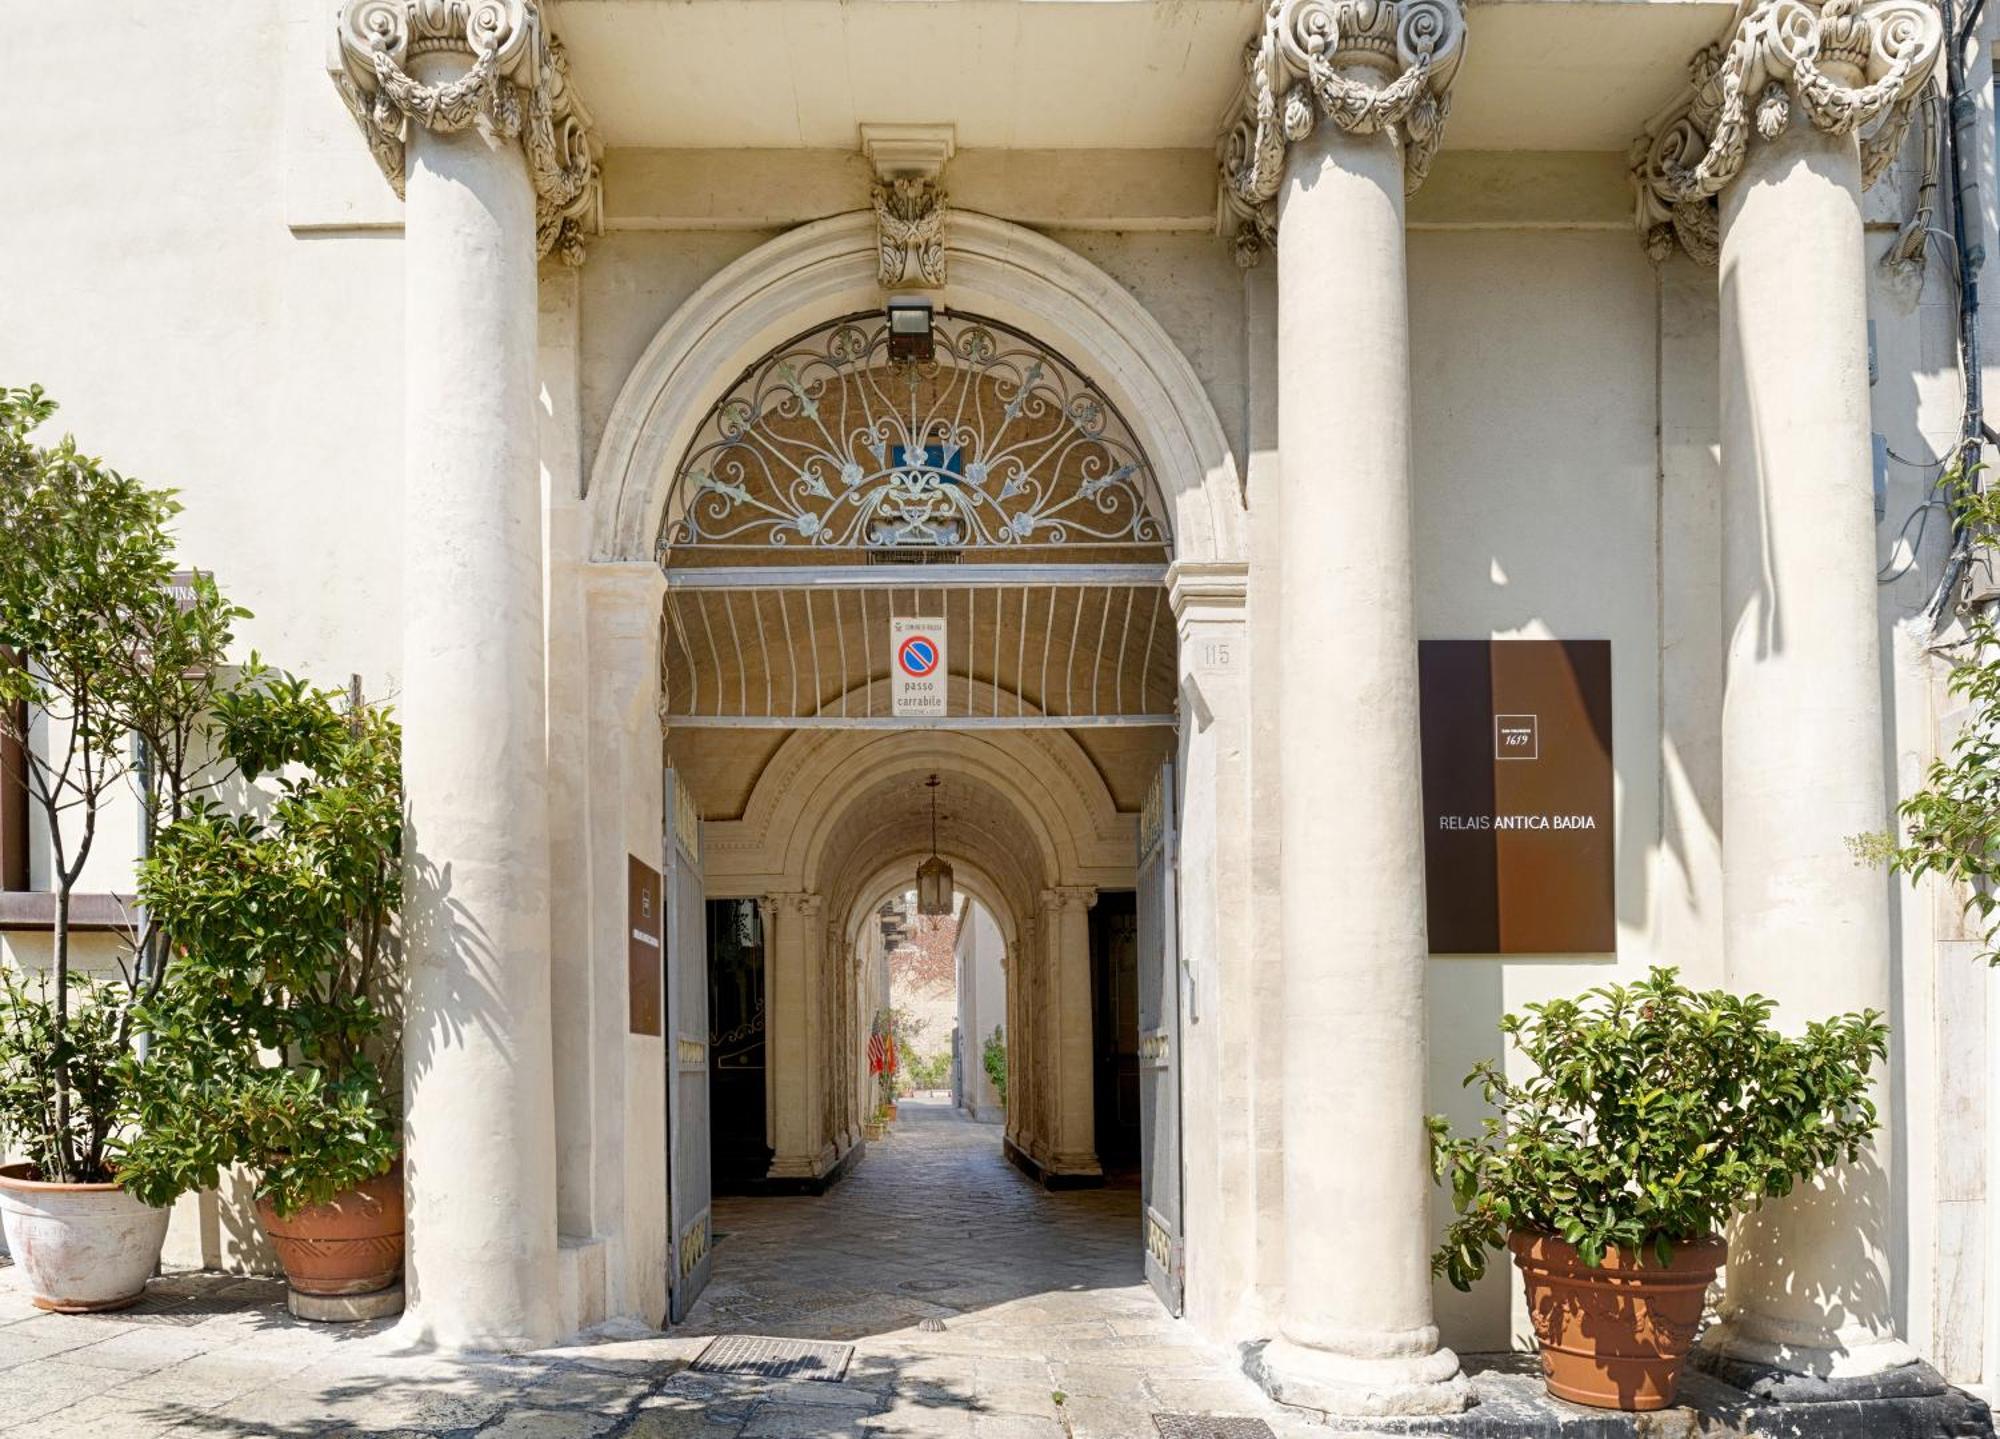 Отель Relais Antica Badia - San Maurizio 1619 Рагуза Экстерьер фото